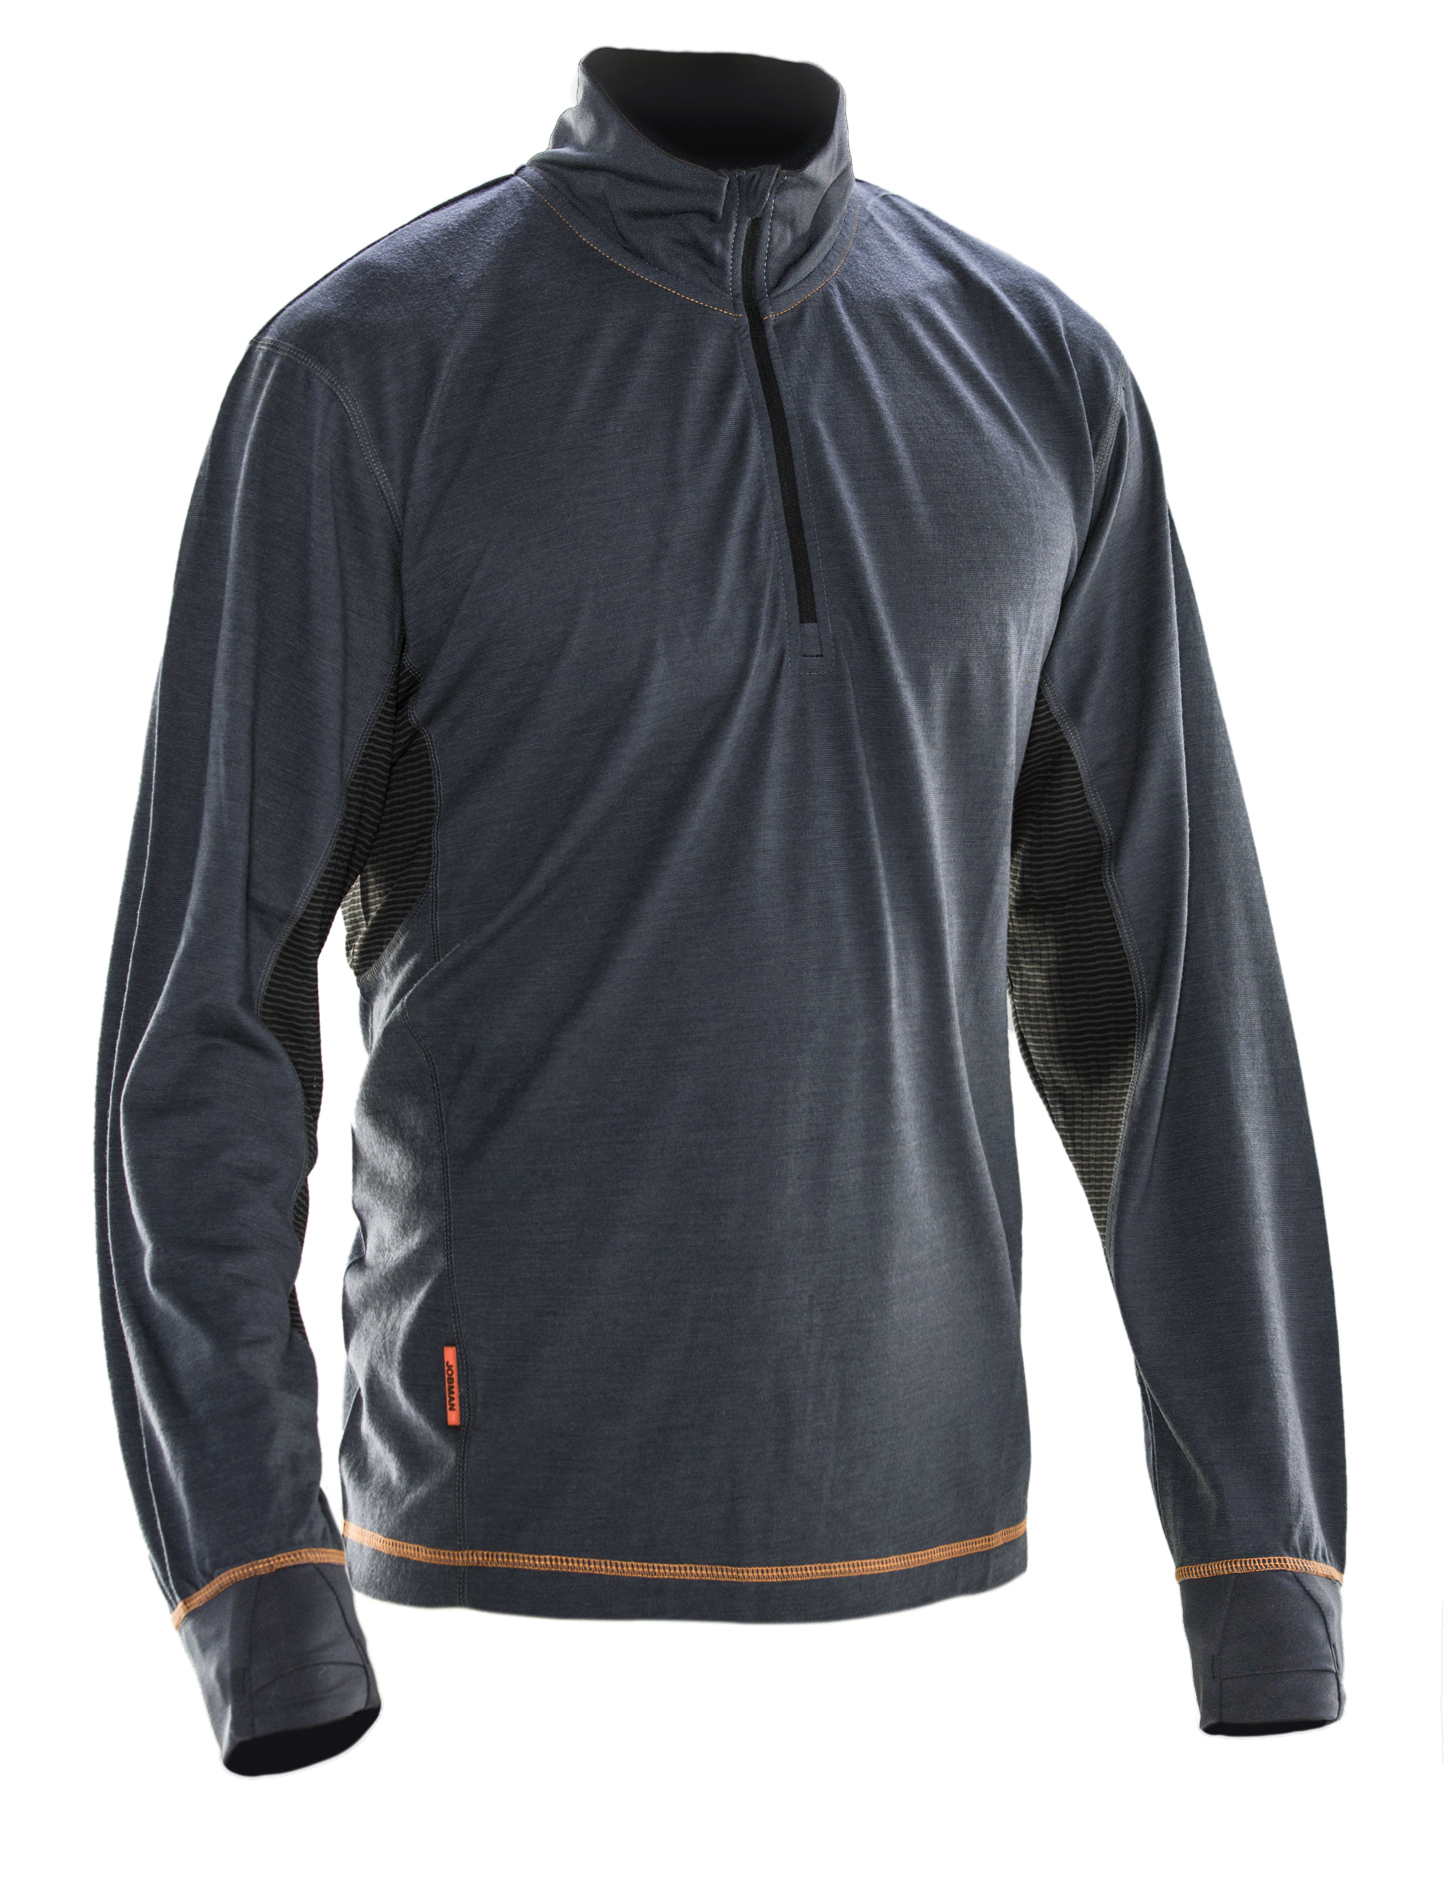 5596 Sweatshirt Dry-tech™ en laine mérinos 3XL gris foncé/noir